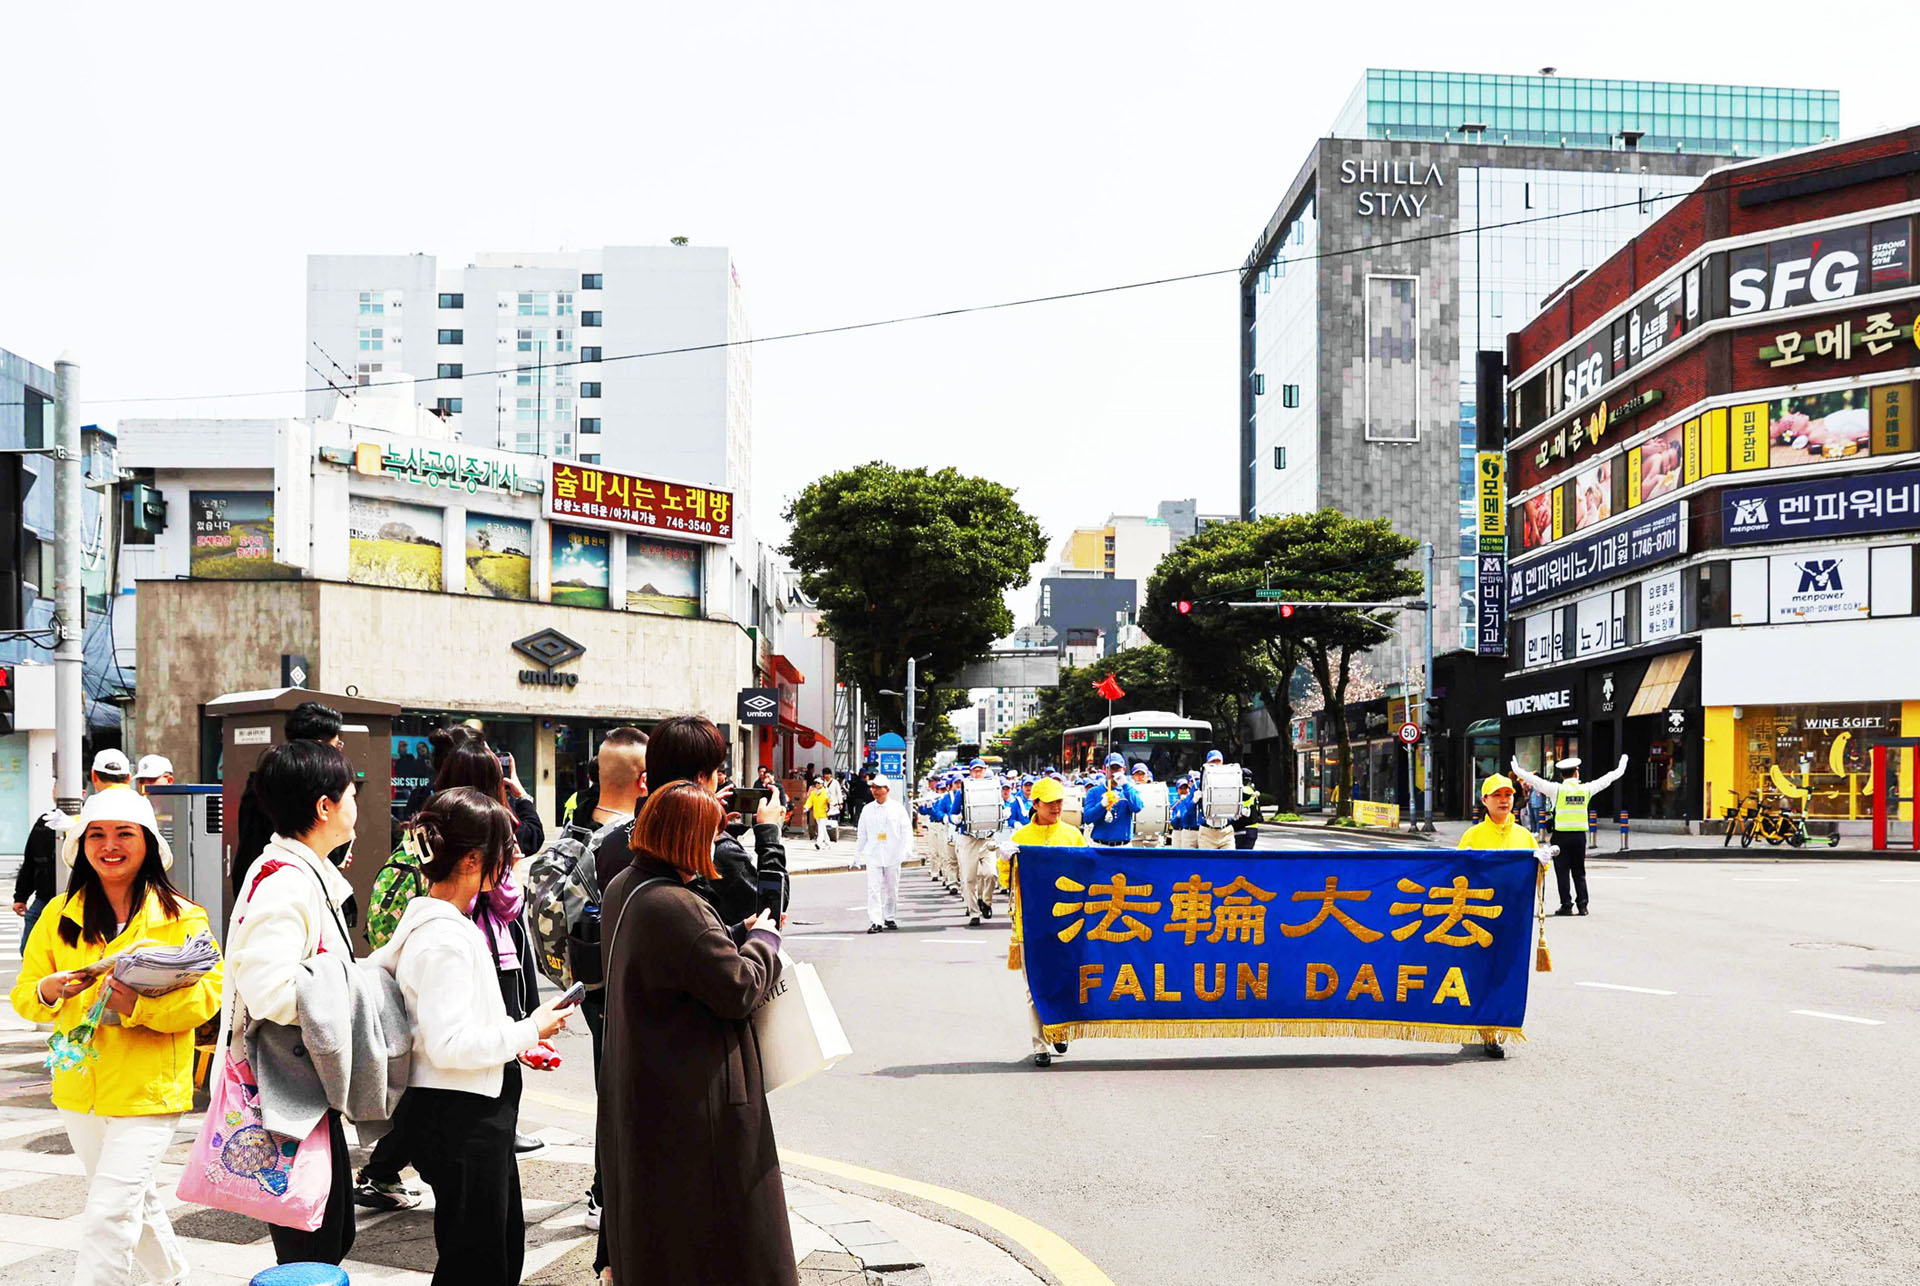 Image for article Pulau Jeju, Korea Selatan: Memperkenalkan Falun Dafa kepada Penduduk dan Wisatawan